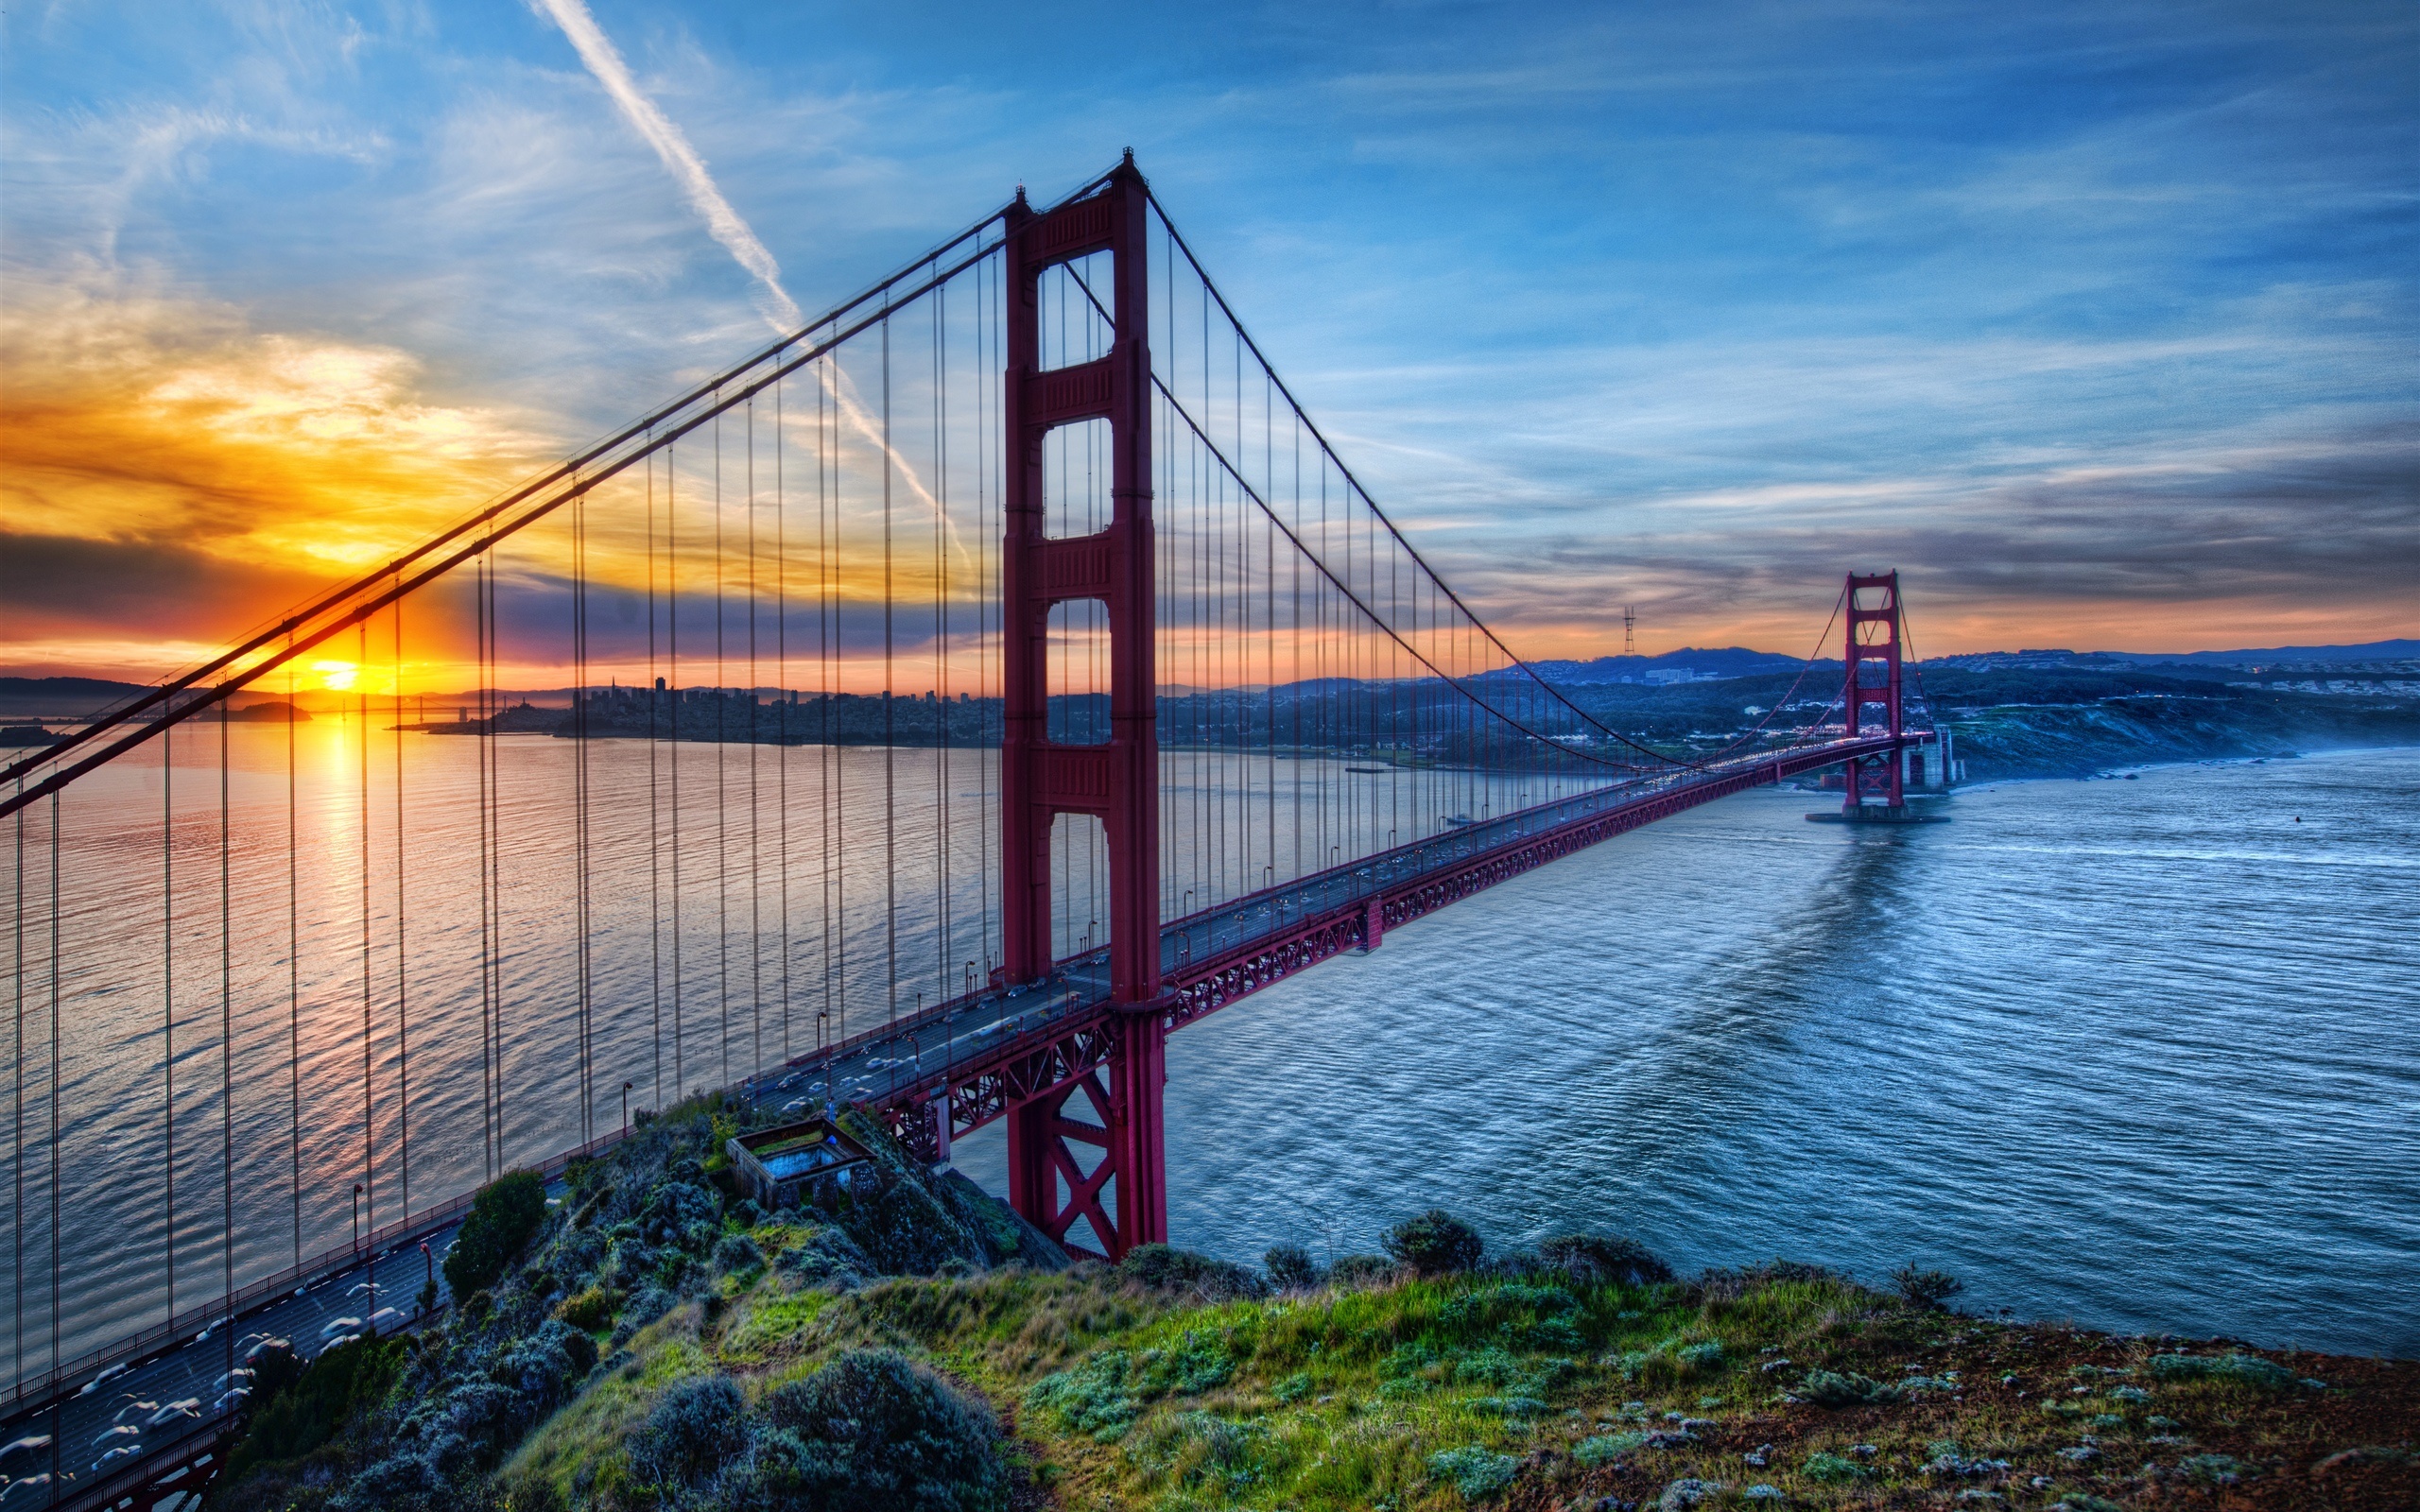 金门大桥 旧金山 加利福尼亚州 美国 大海 天空 夕阳桌面壁纸 2560x1600 壁纸下载 Cn Hdwall365 Com